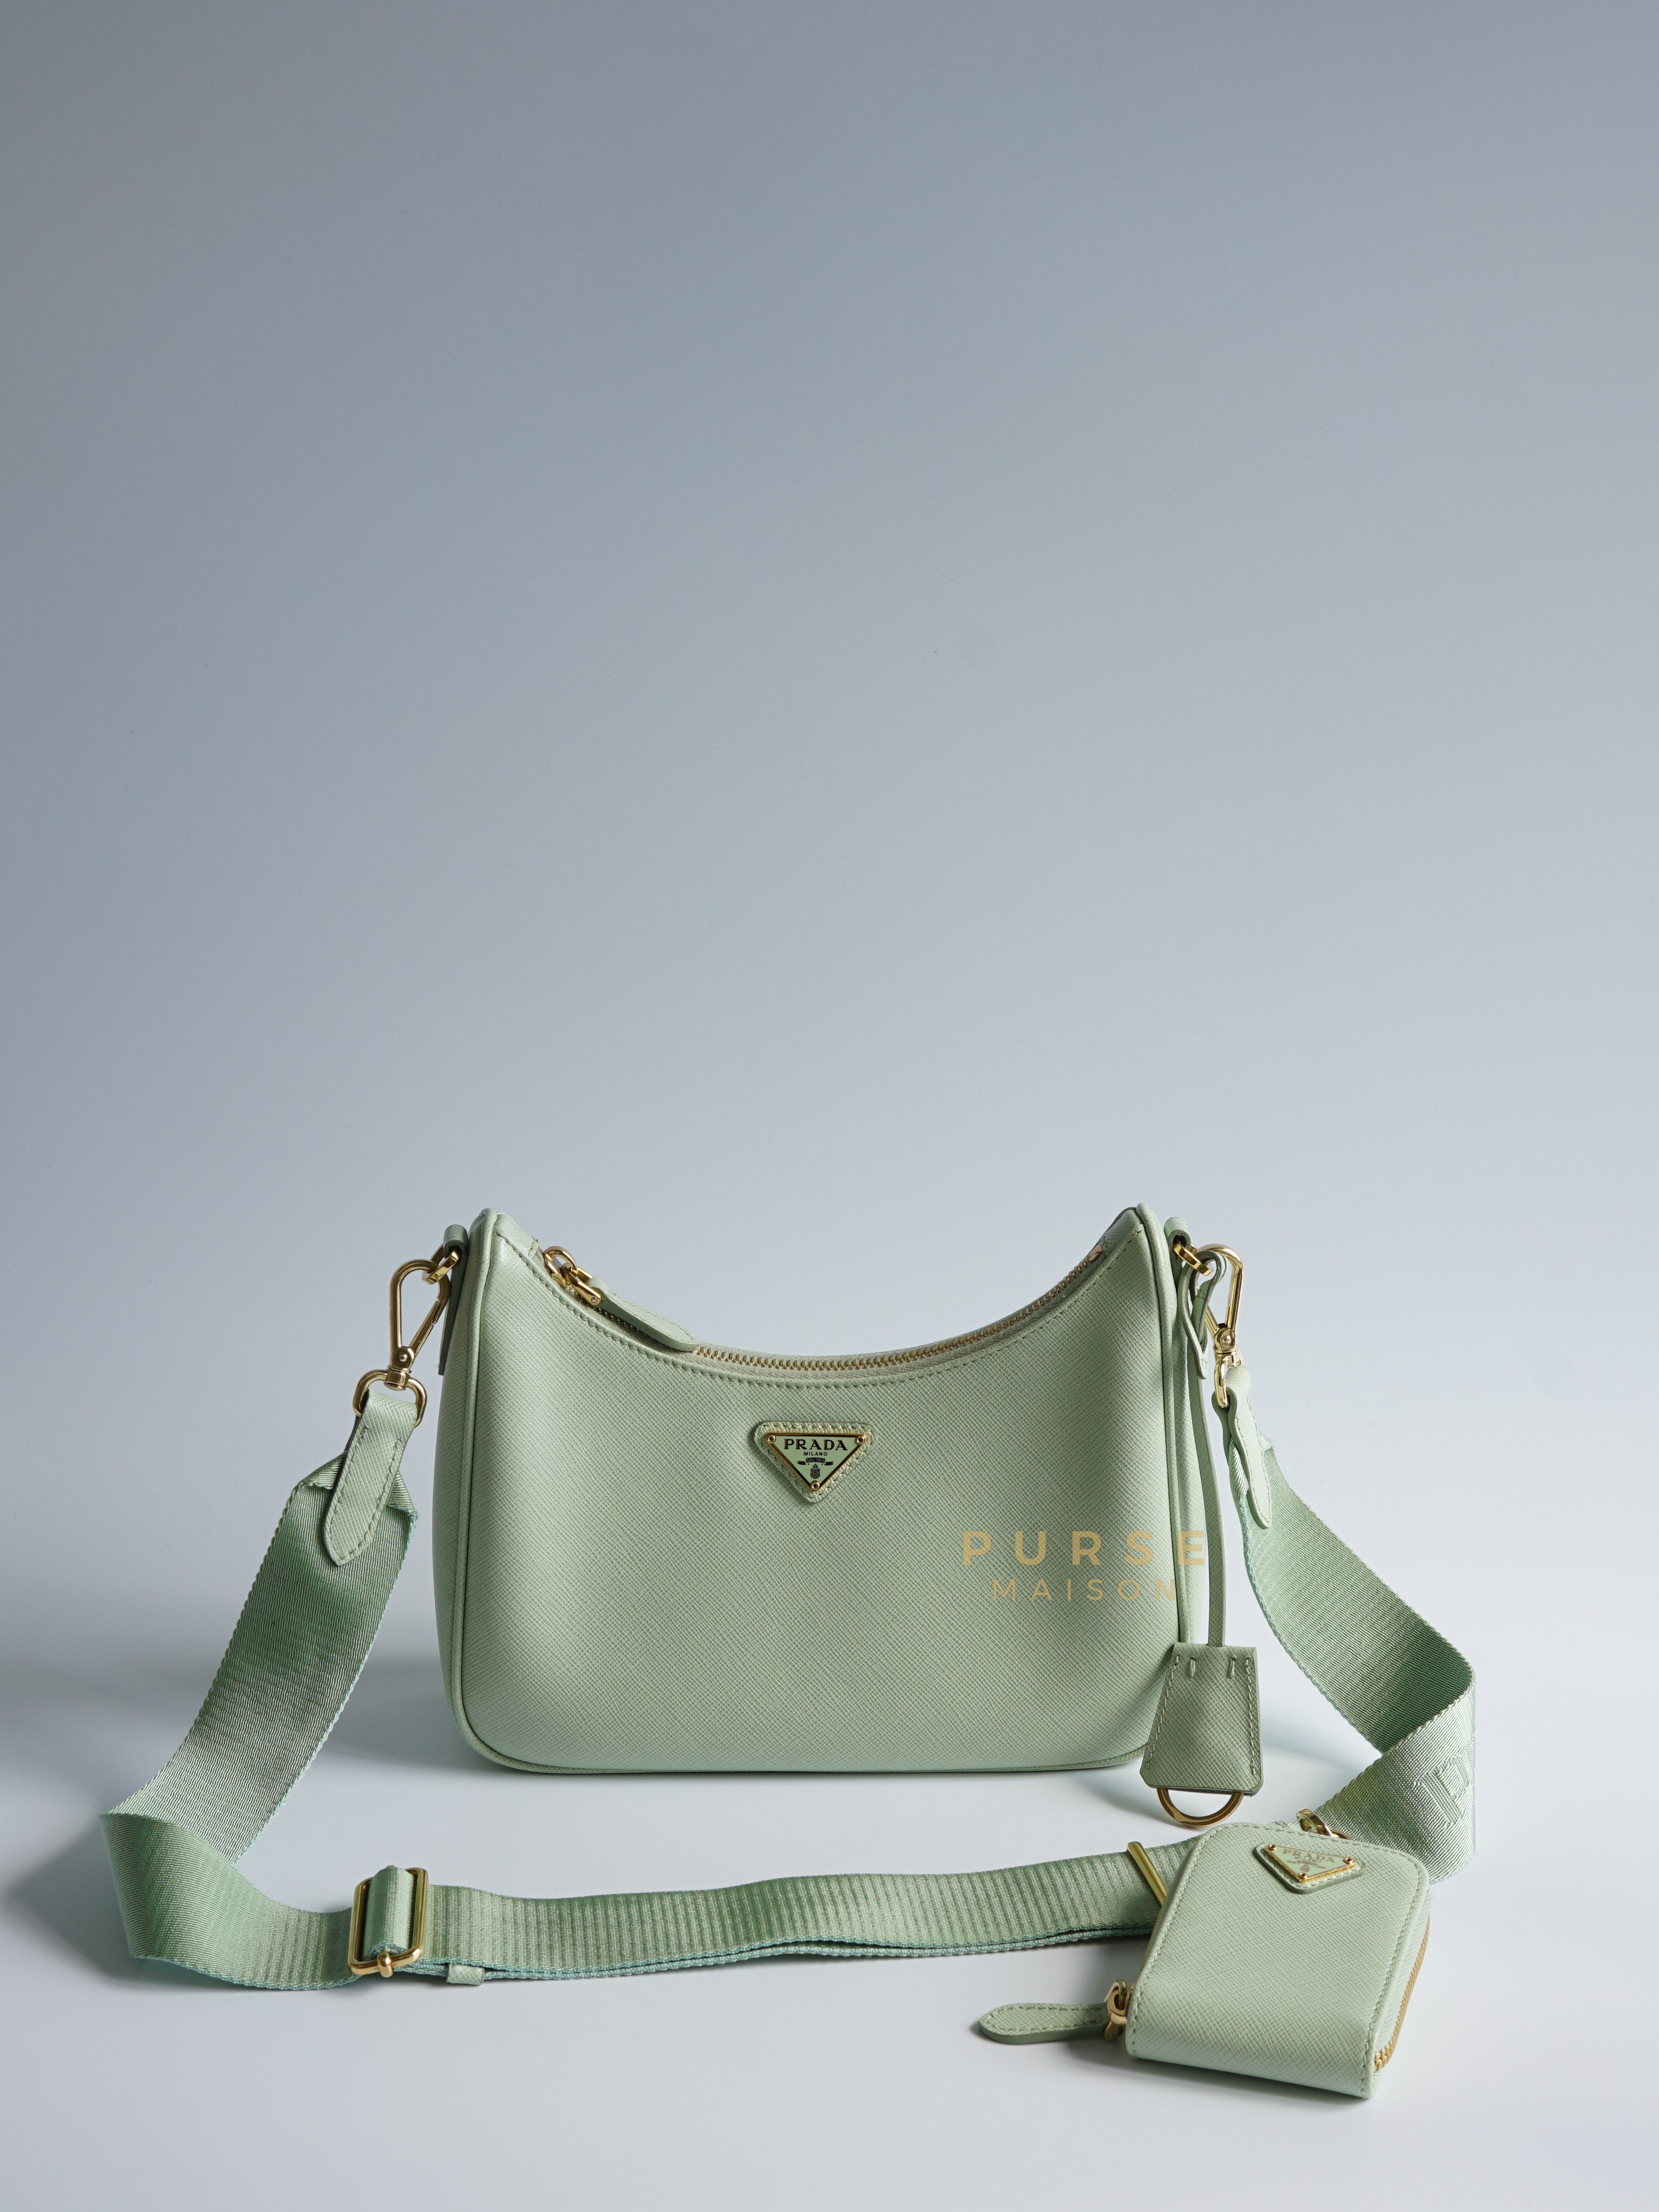 1BH204 Bandoliera Saffiano Lux Re-edition 2005 Mint Green Shoulder Bag | Purse Maison Luxury Bags Shop